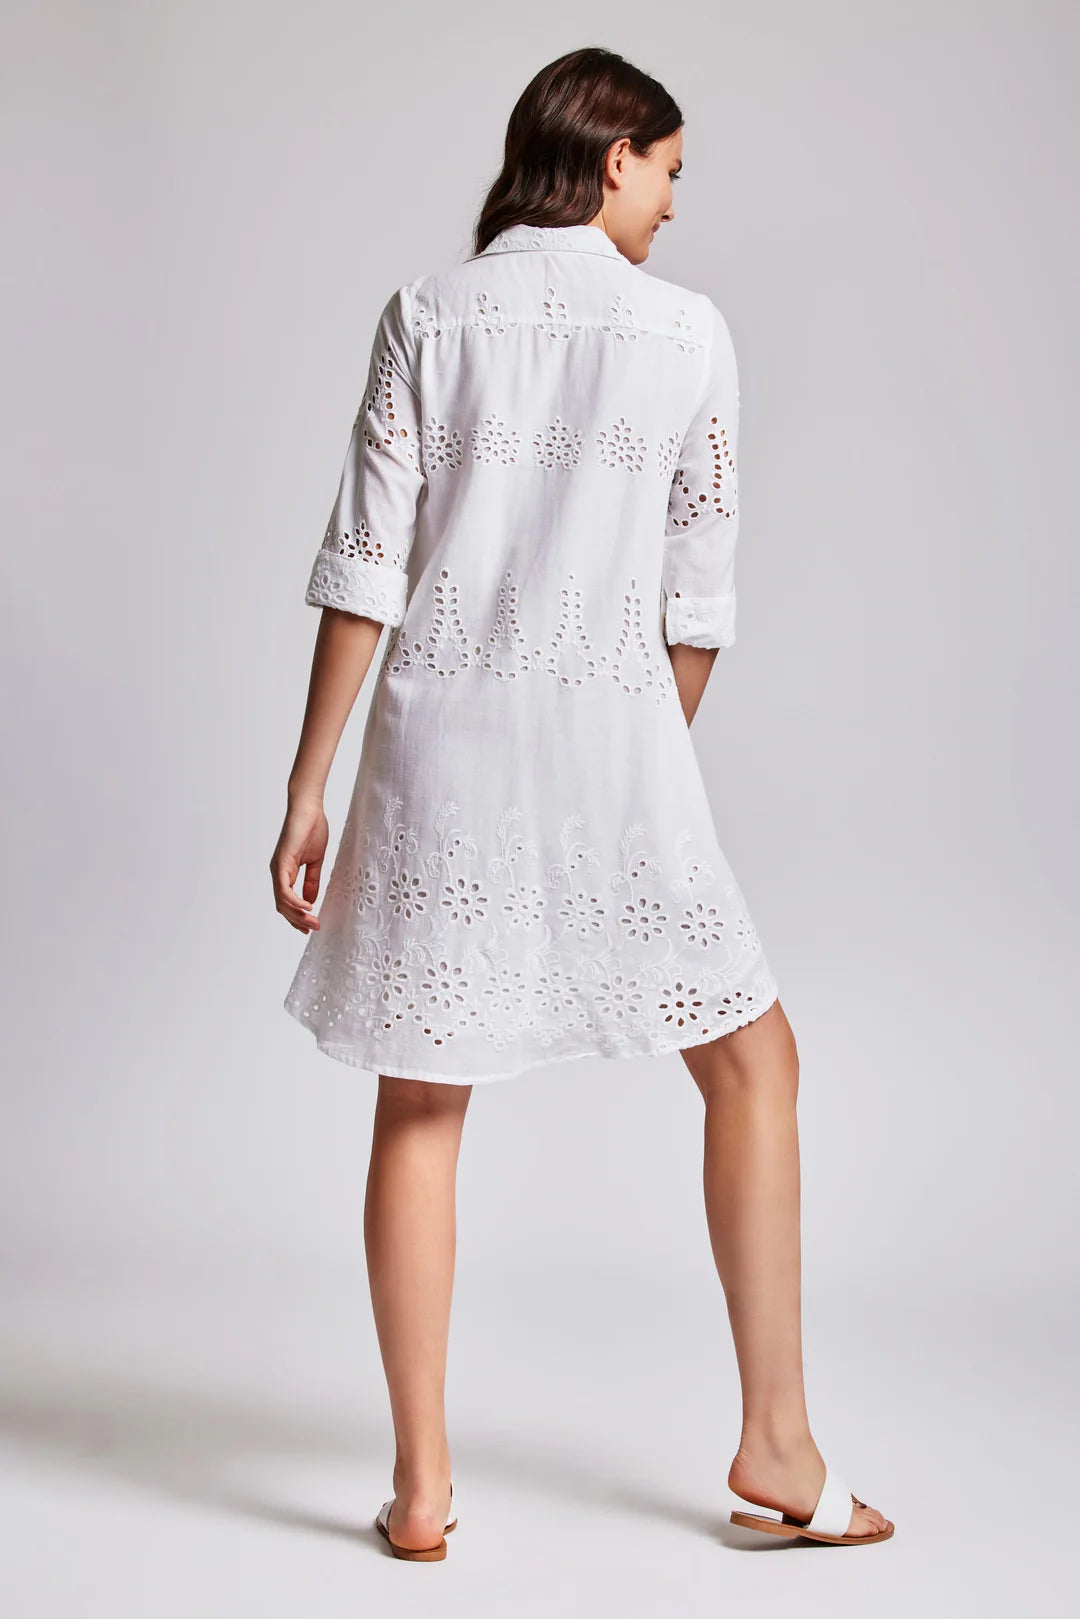 Iconique Romina 3/4 Sleeve Shirt Dress - White